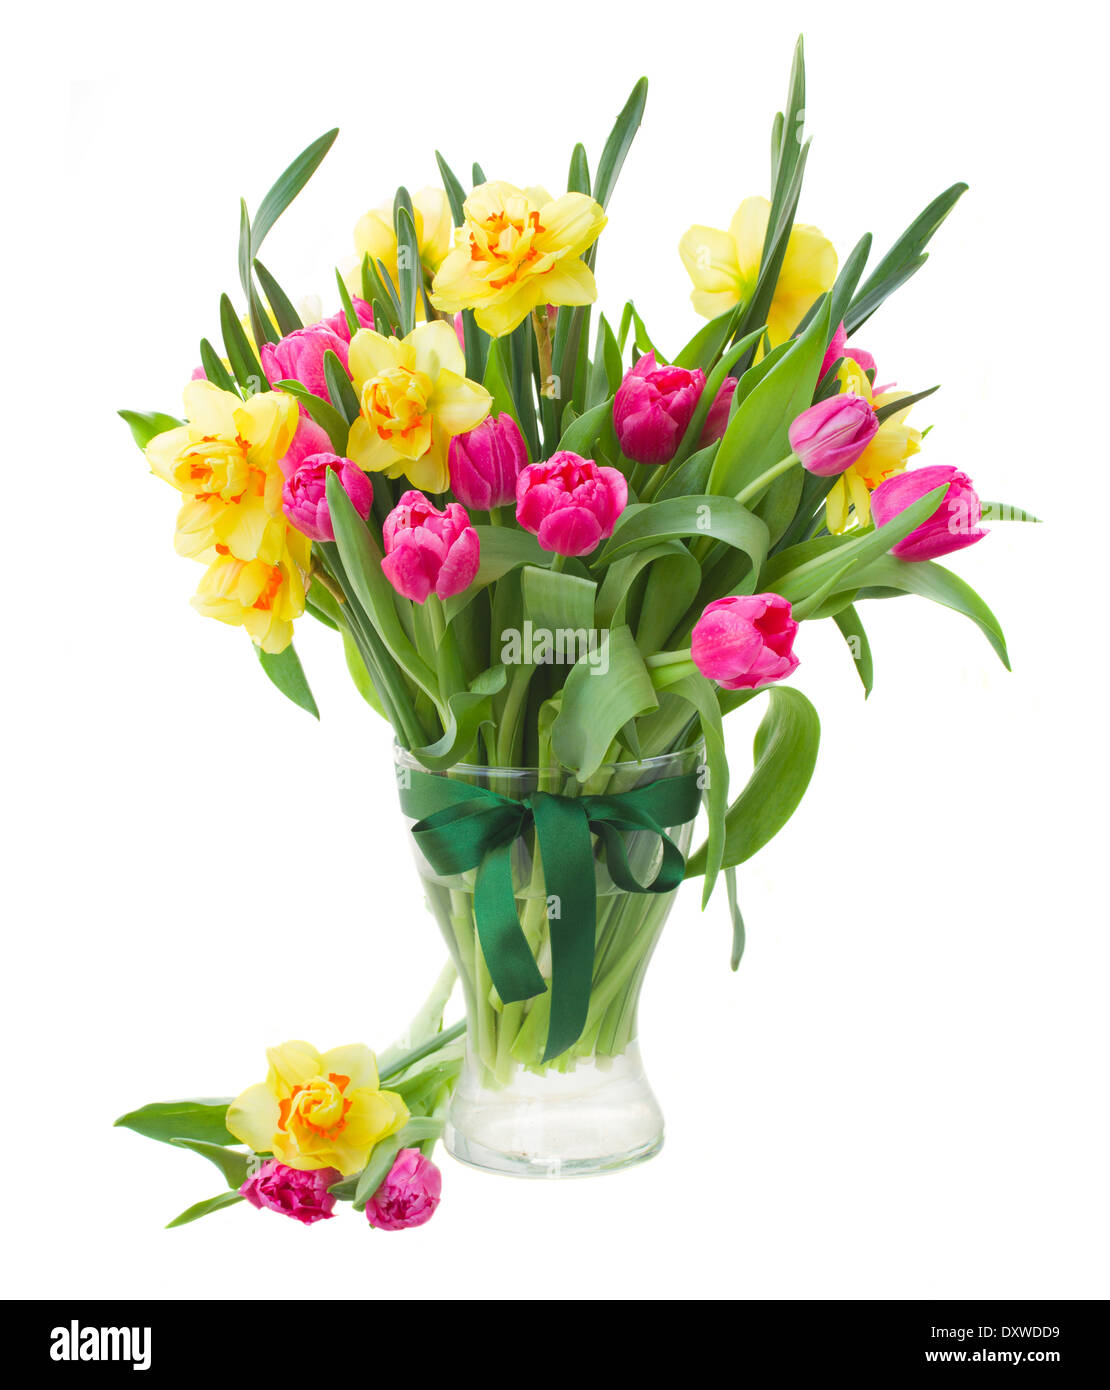 Bouquet de tulipes roses et jonquilles en vase jaune isolé sur fond blanc Banque D'Images